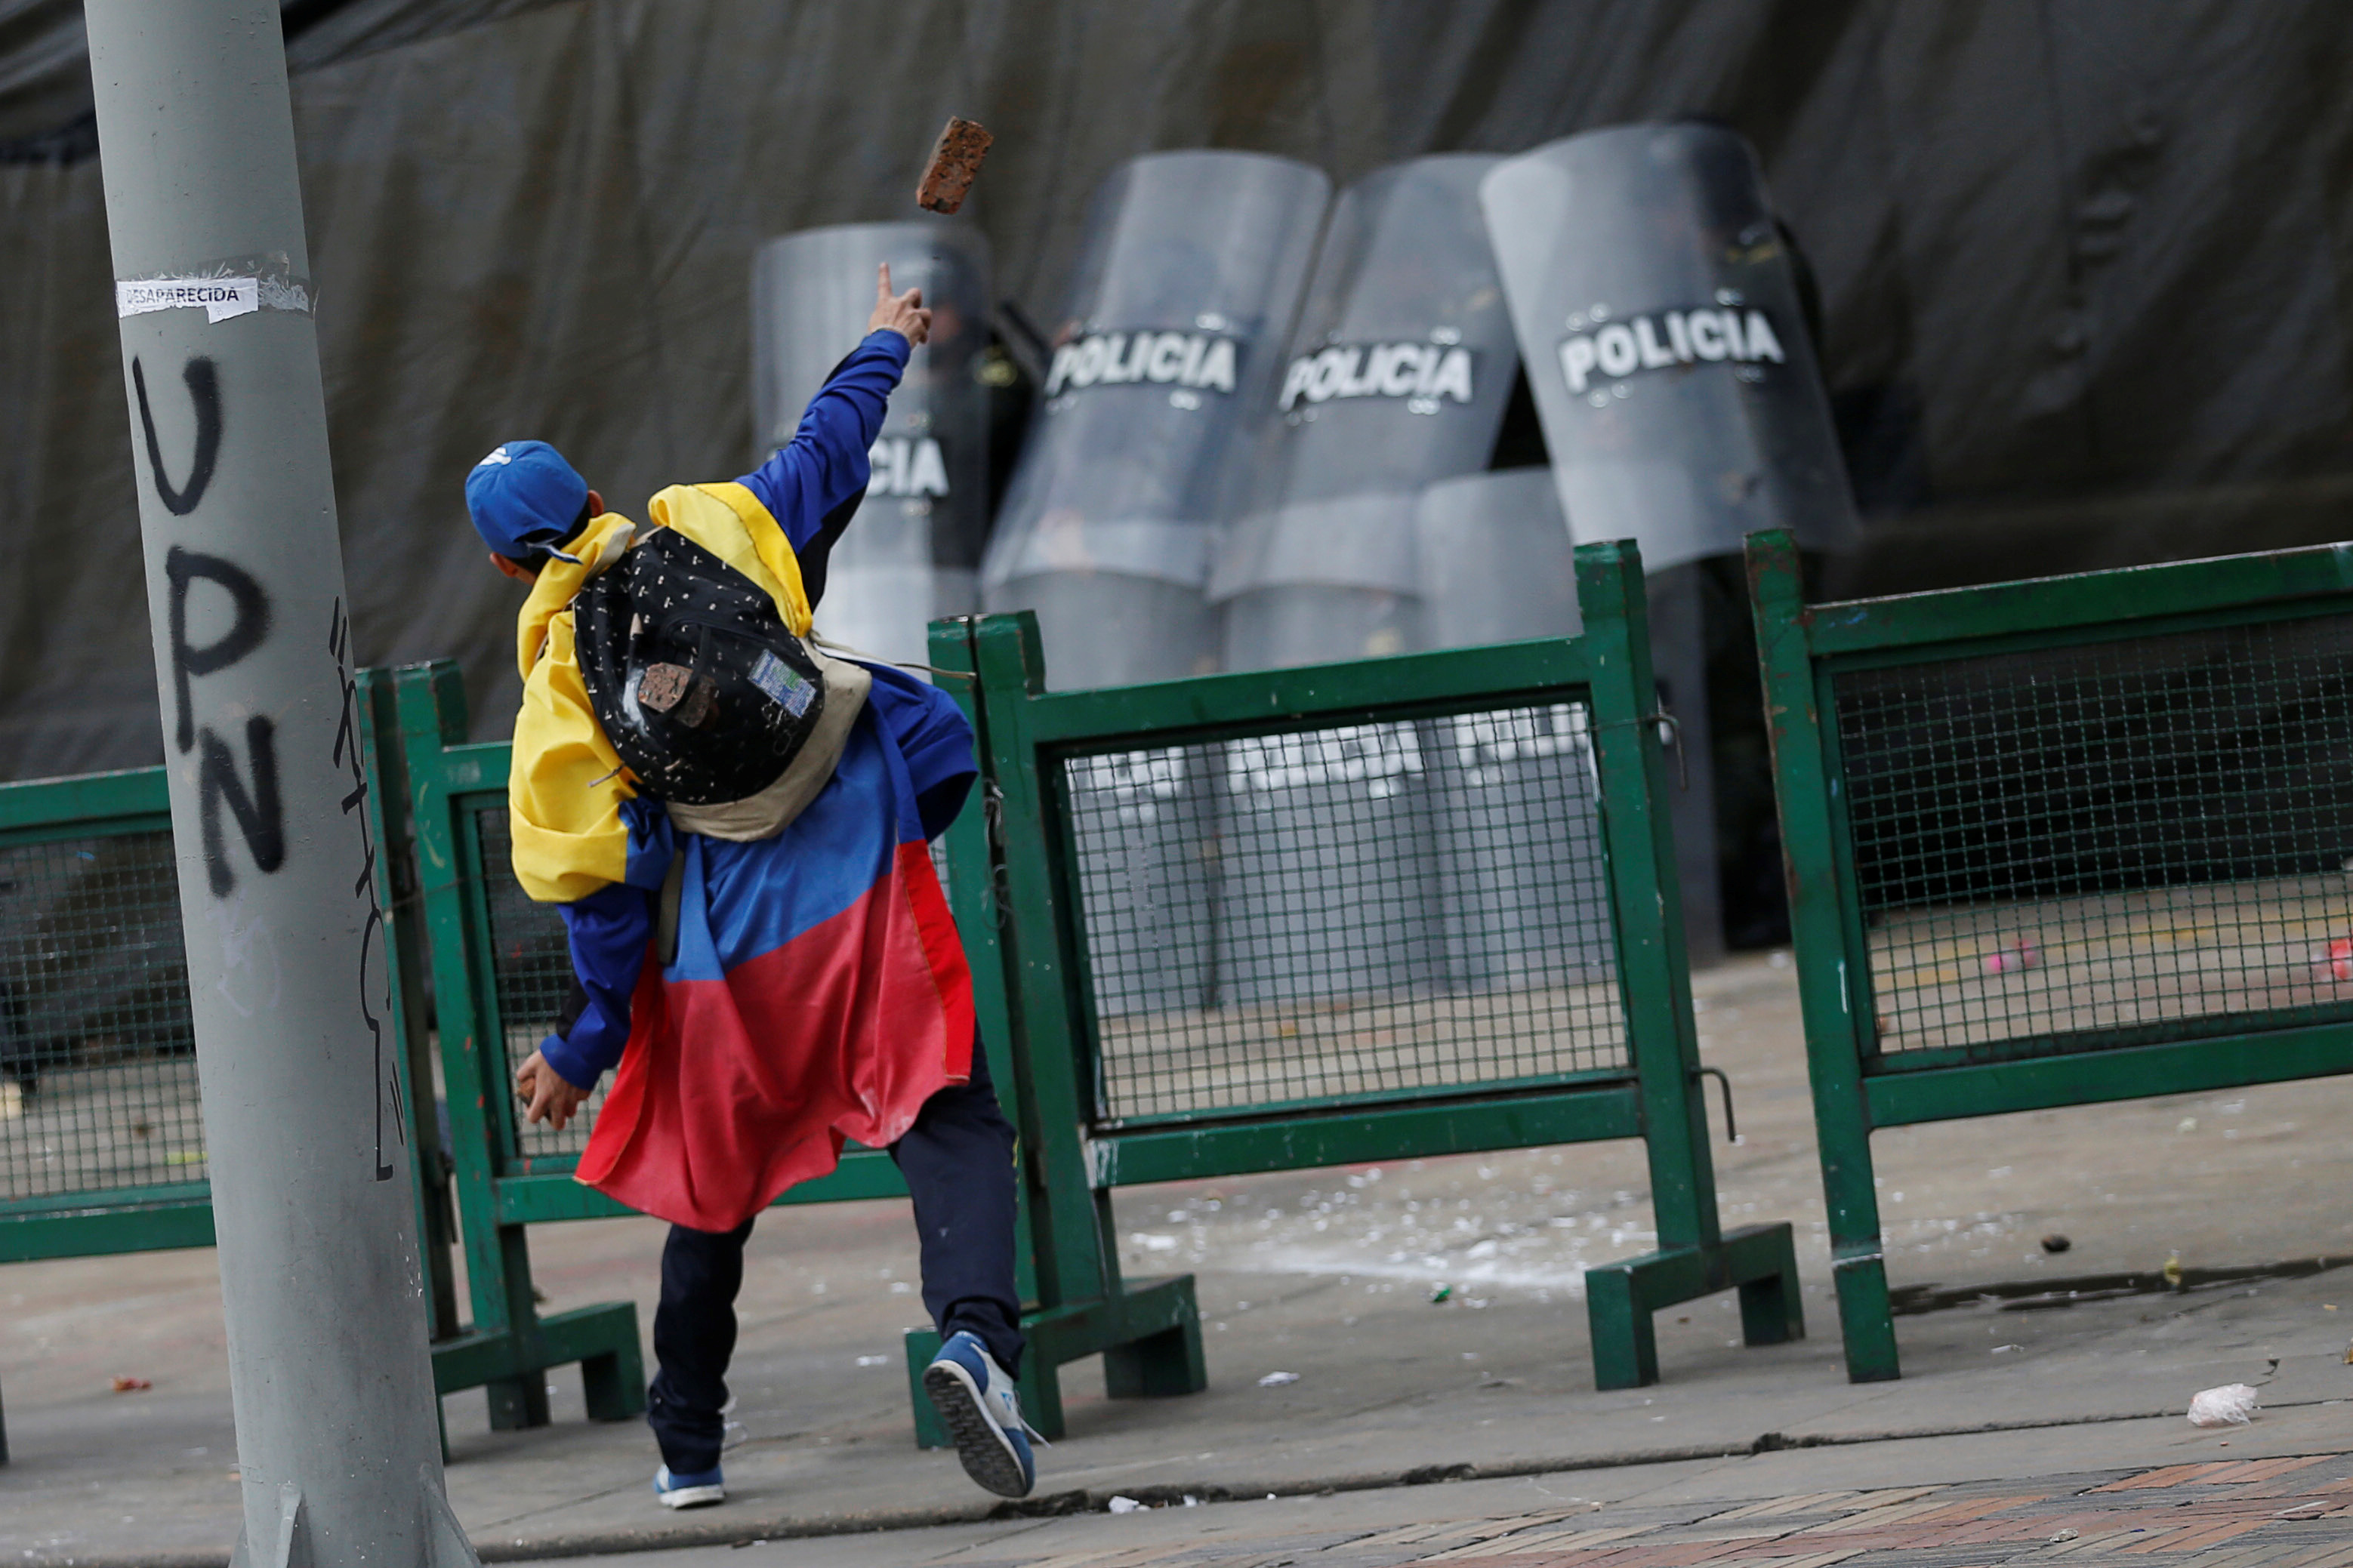 جانب من الاحتجاجات والعنف فى كولومبيا (6)